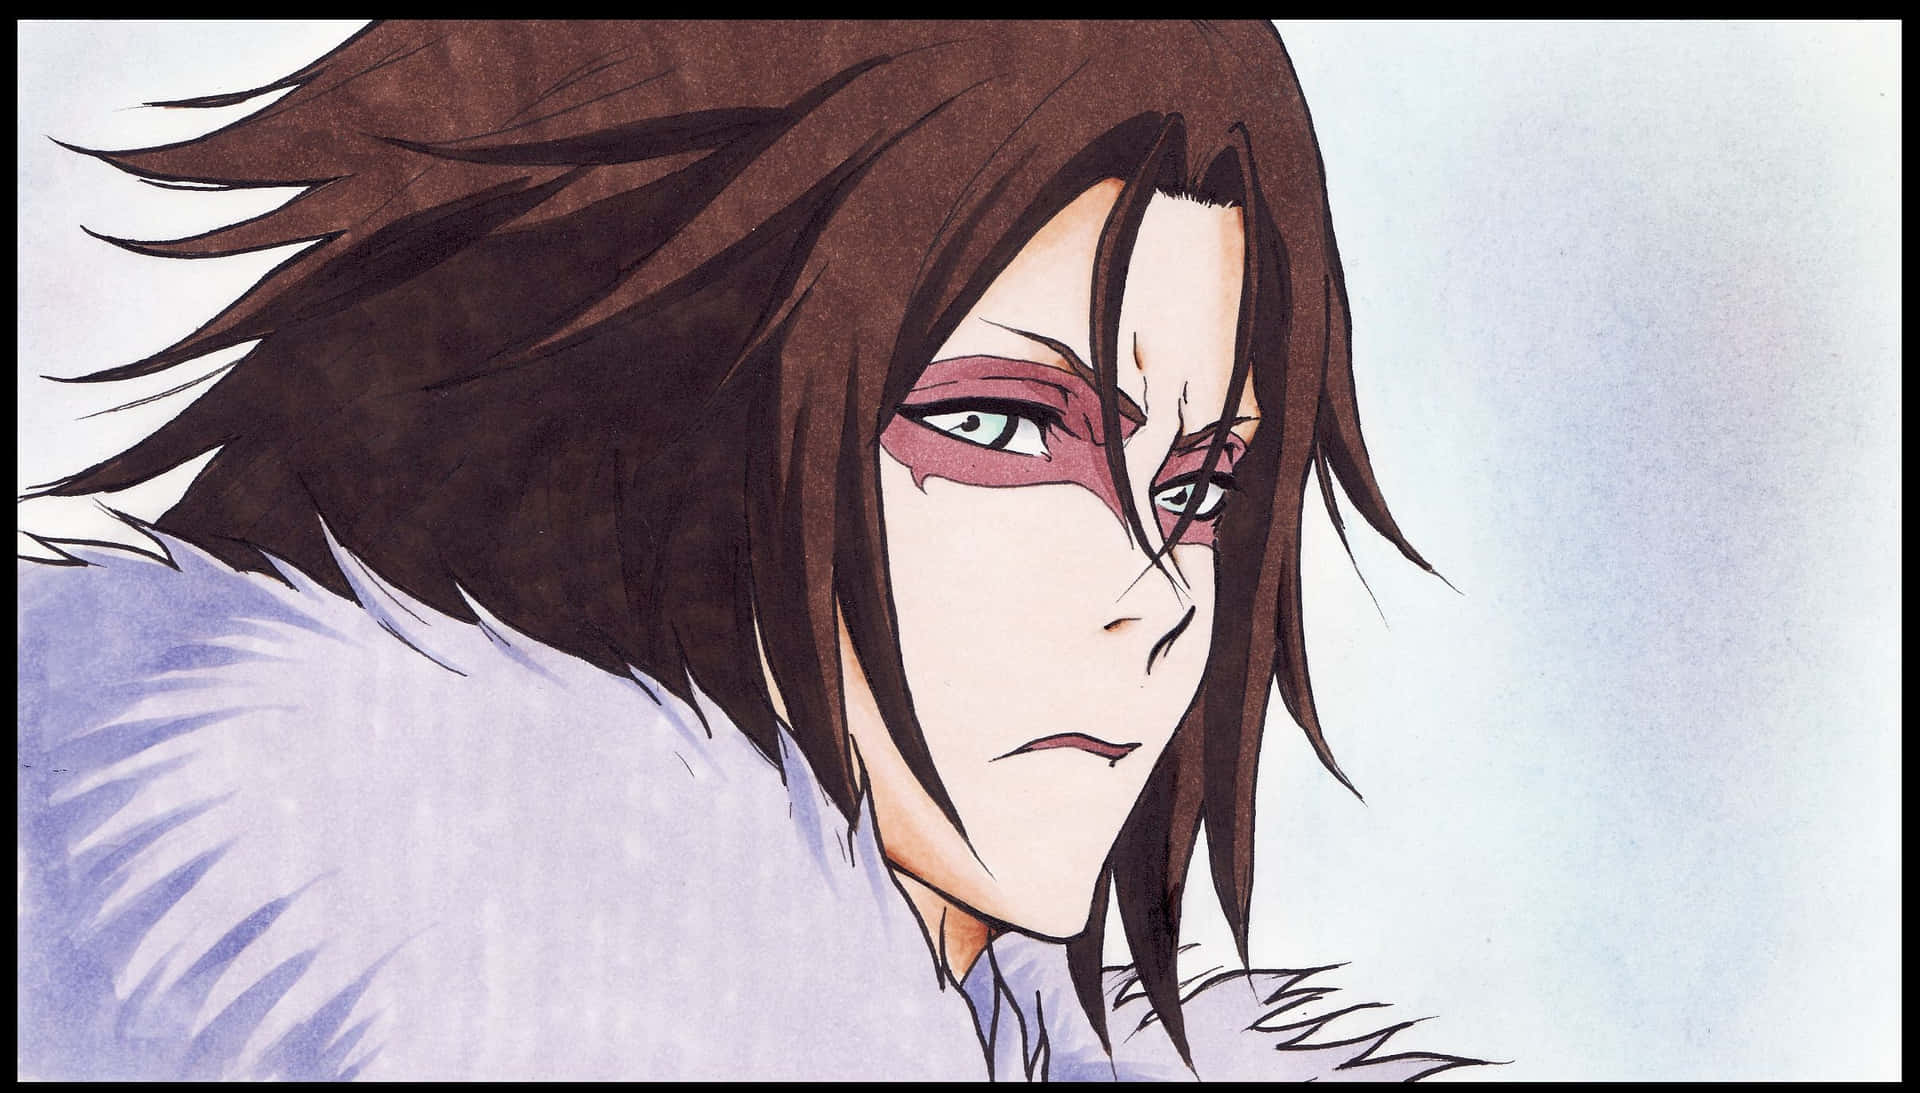 Muramasa unleashes his power in the Bleach anime series Wallpaper